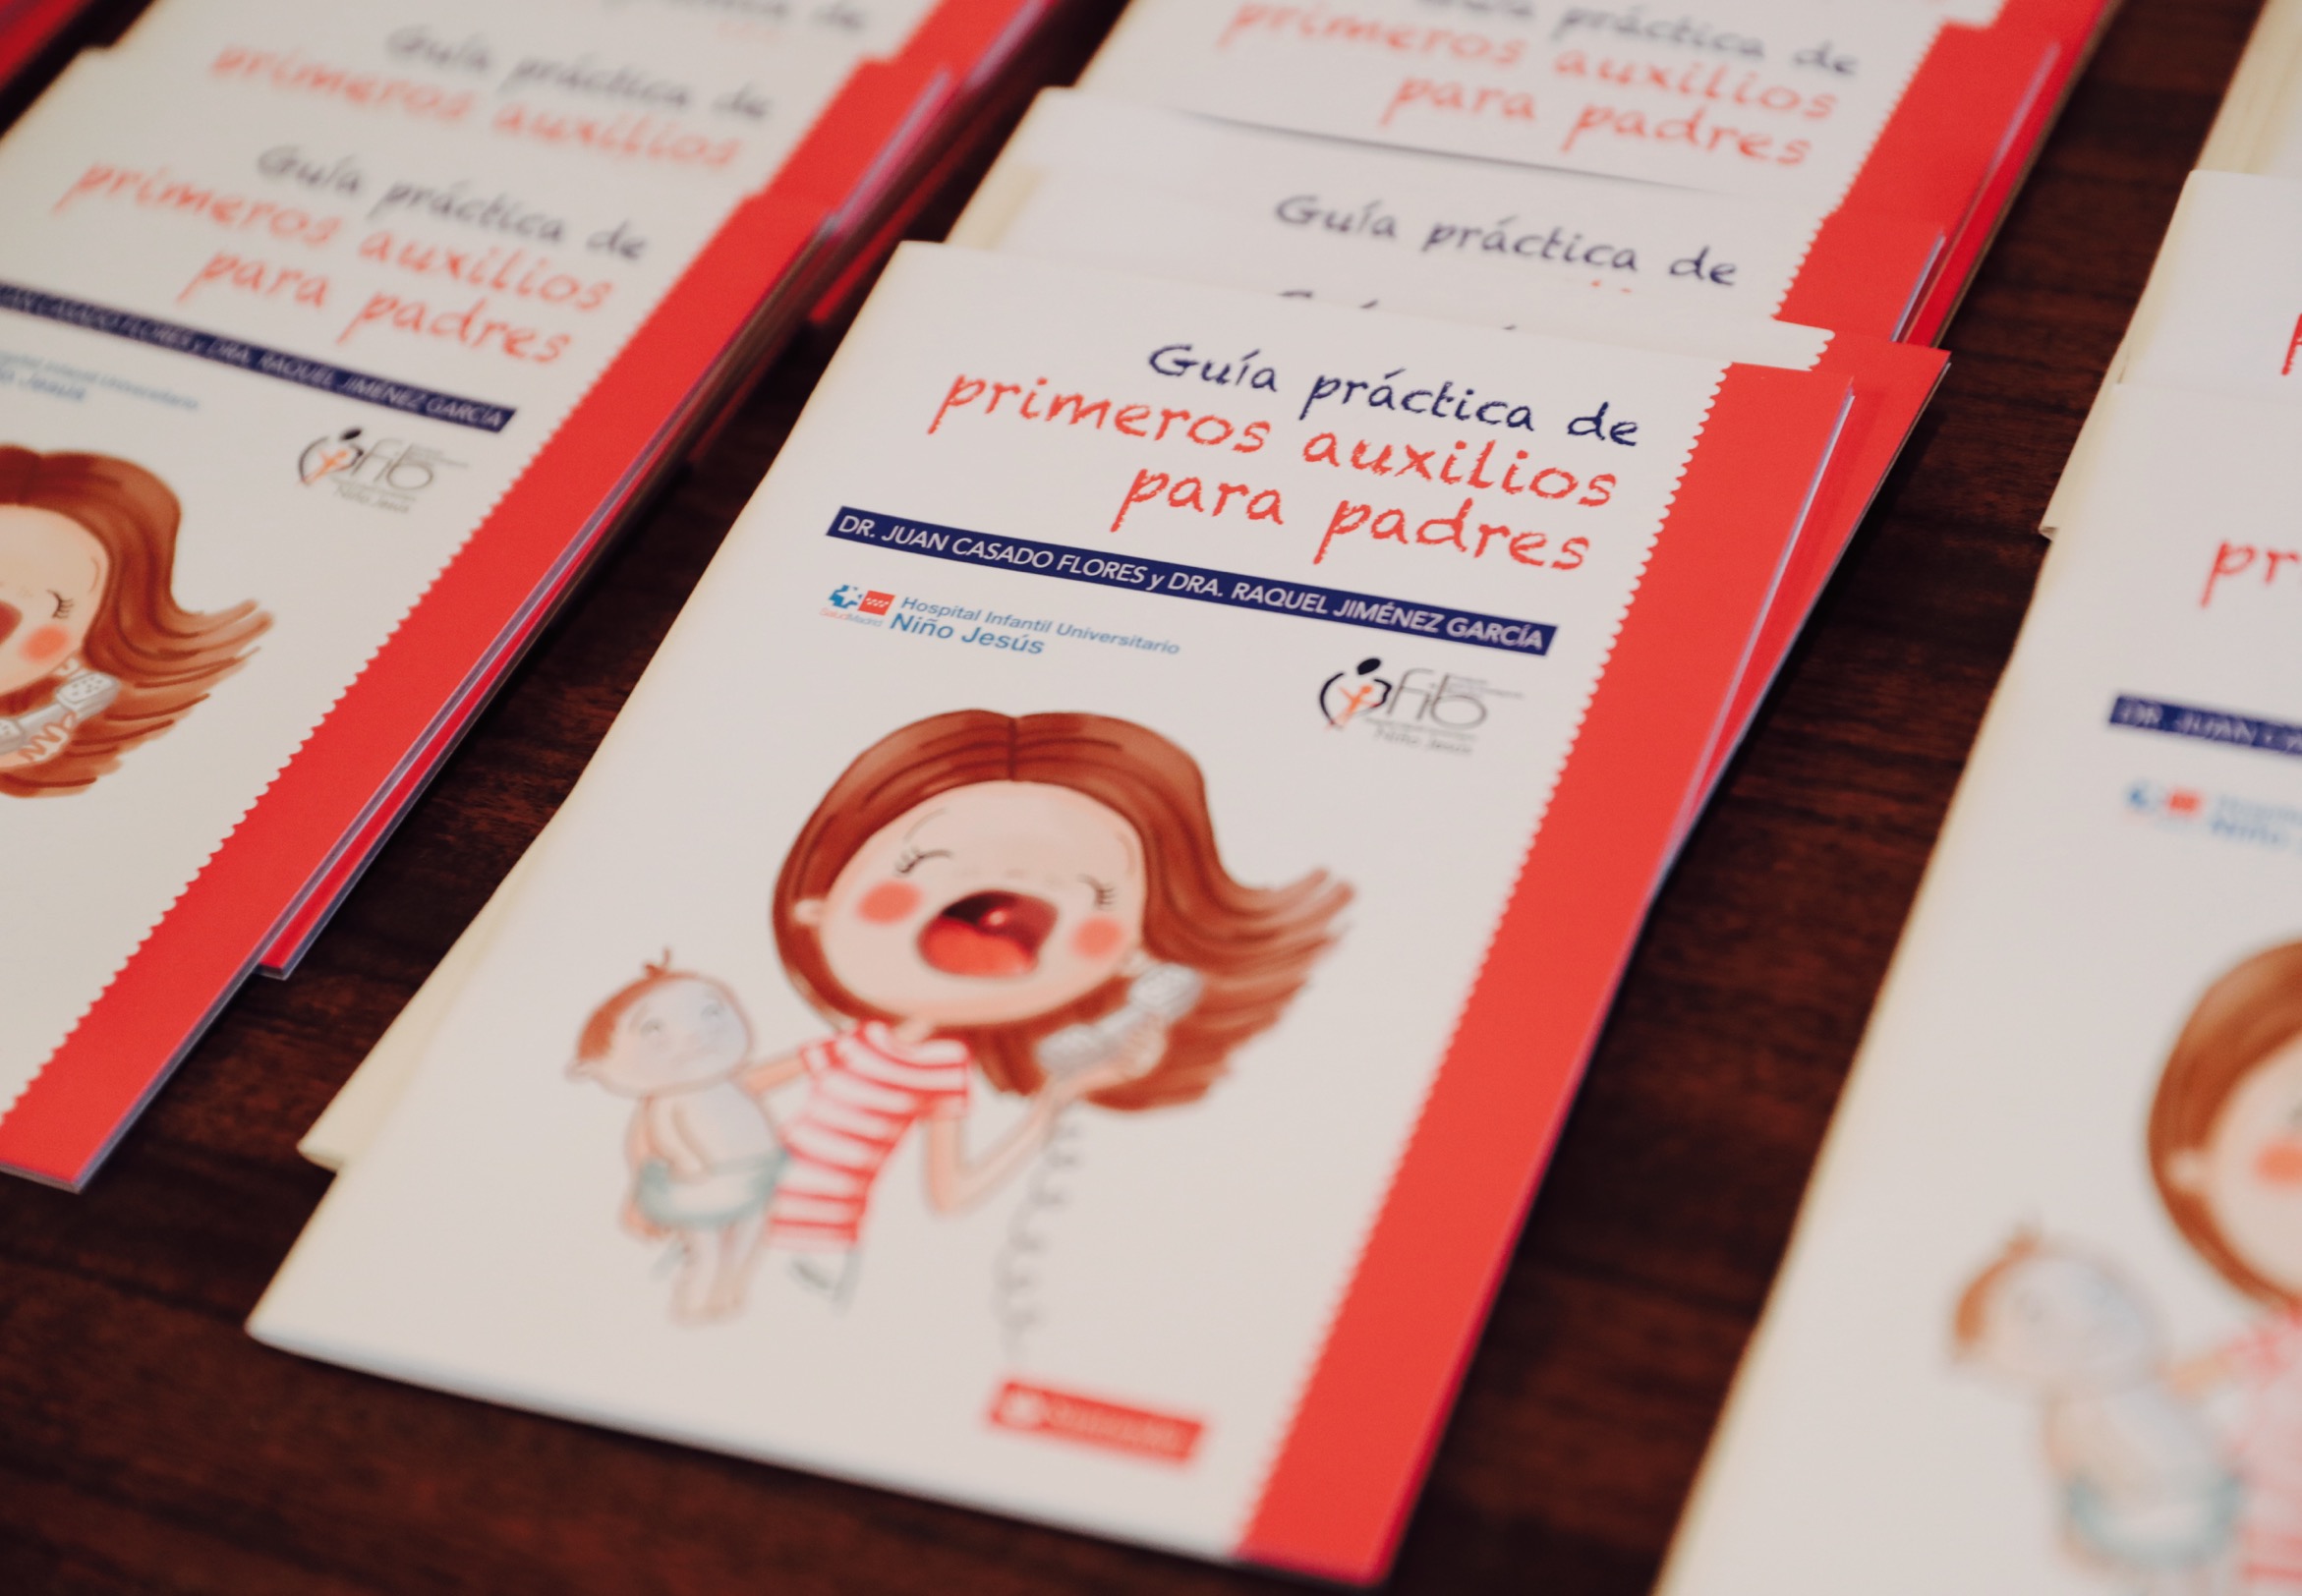 El Hospital Niño Jesús elabora la 'Guía práctica de primeros auxilios para padres'